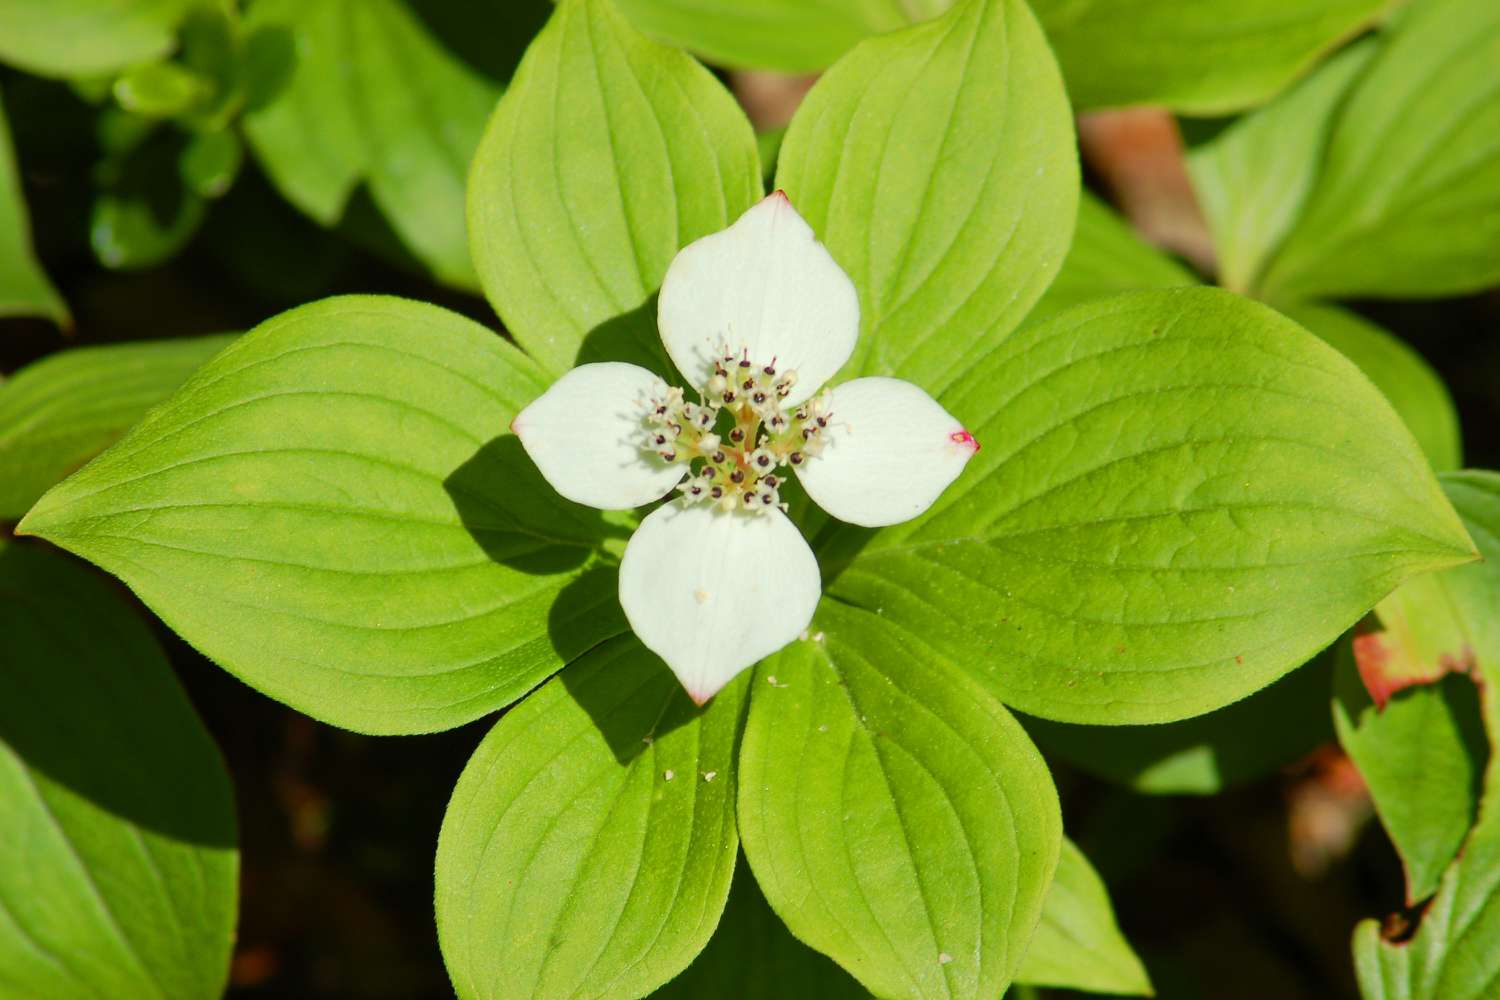 Bunchberry (eine Hartriegelart) ist eine kurze Pflanze